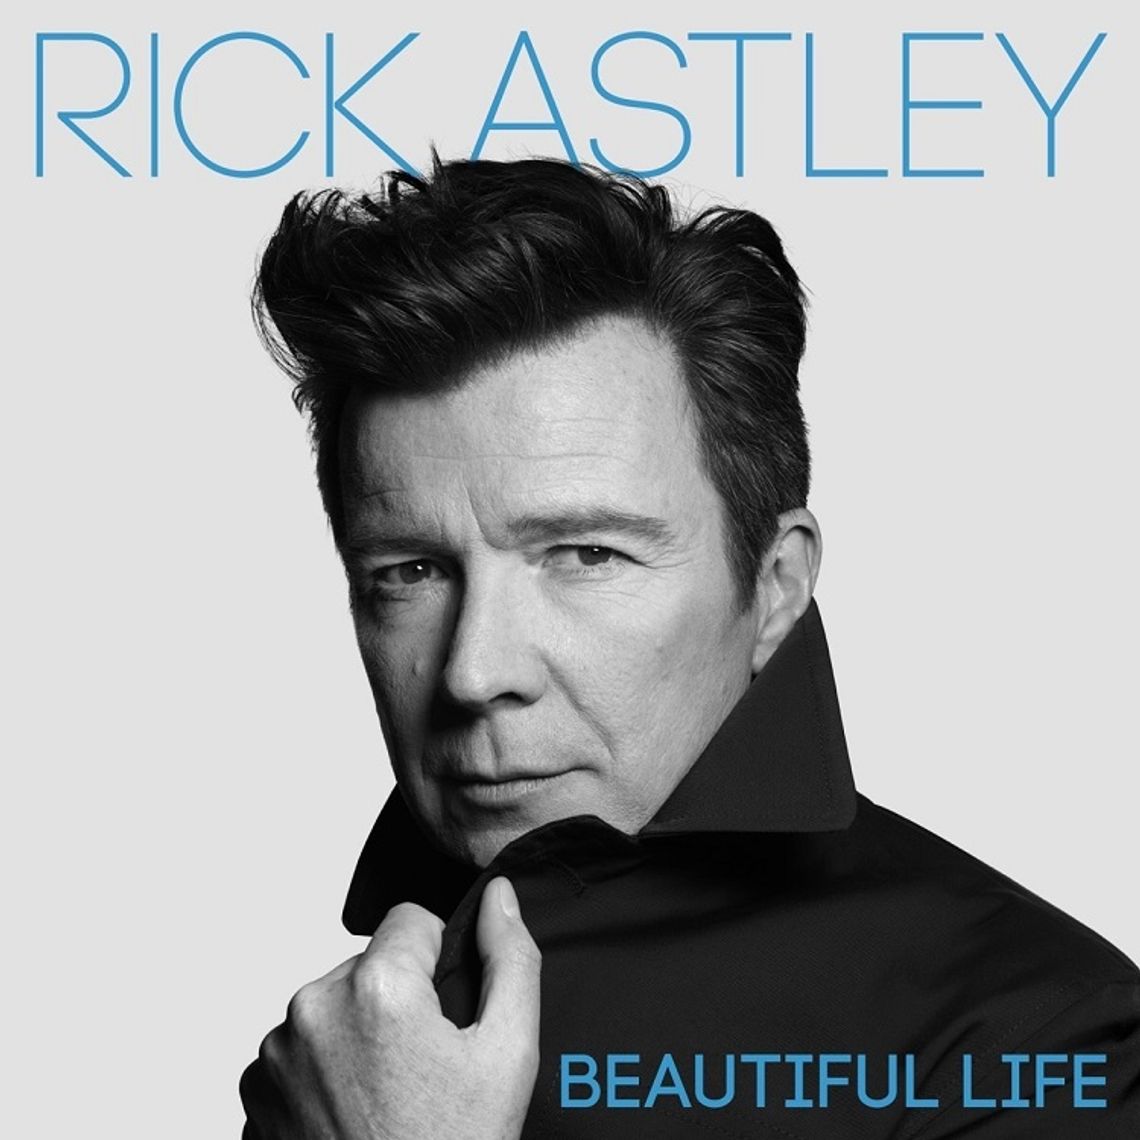 RICK ASTLEY - "Beautiful Life"